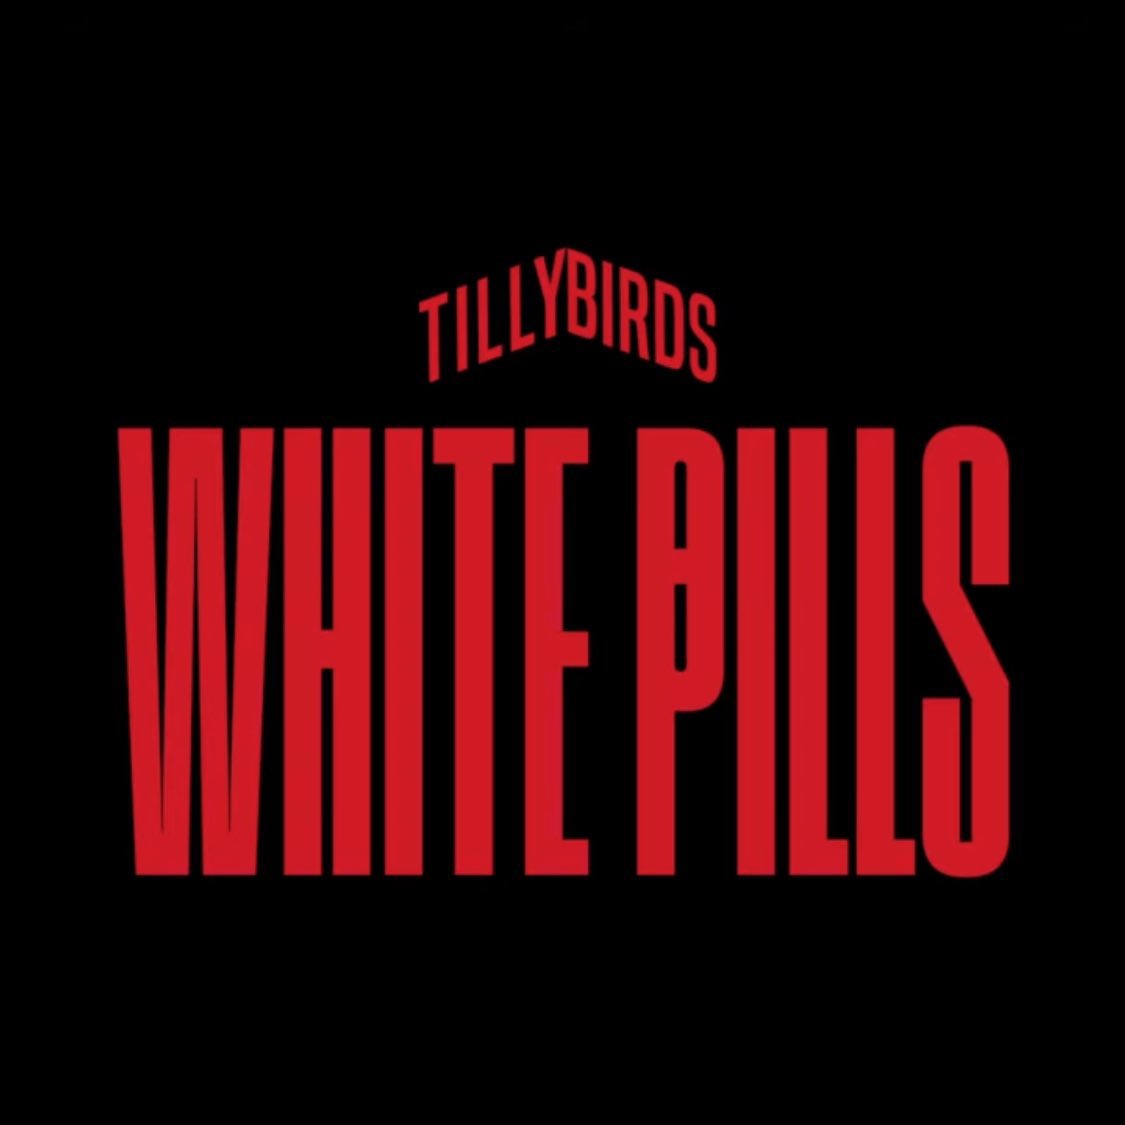 ถ้าจะให้บอกความรู้สึกเกี่ยวกับเพลงใหม่ของ #TillyBirds เพลง #WhitePills บอกได้เลยว่า นี่แหละความเป็น TillyBirds | This is ABSOLUTELY TILLY BIRDS!!